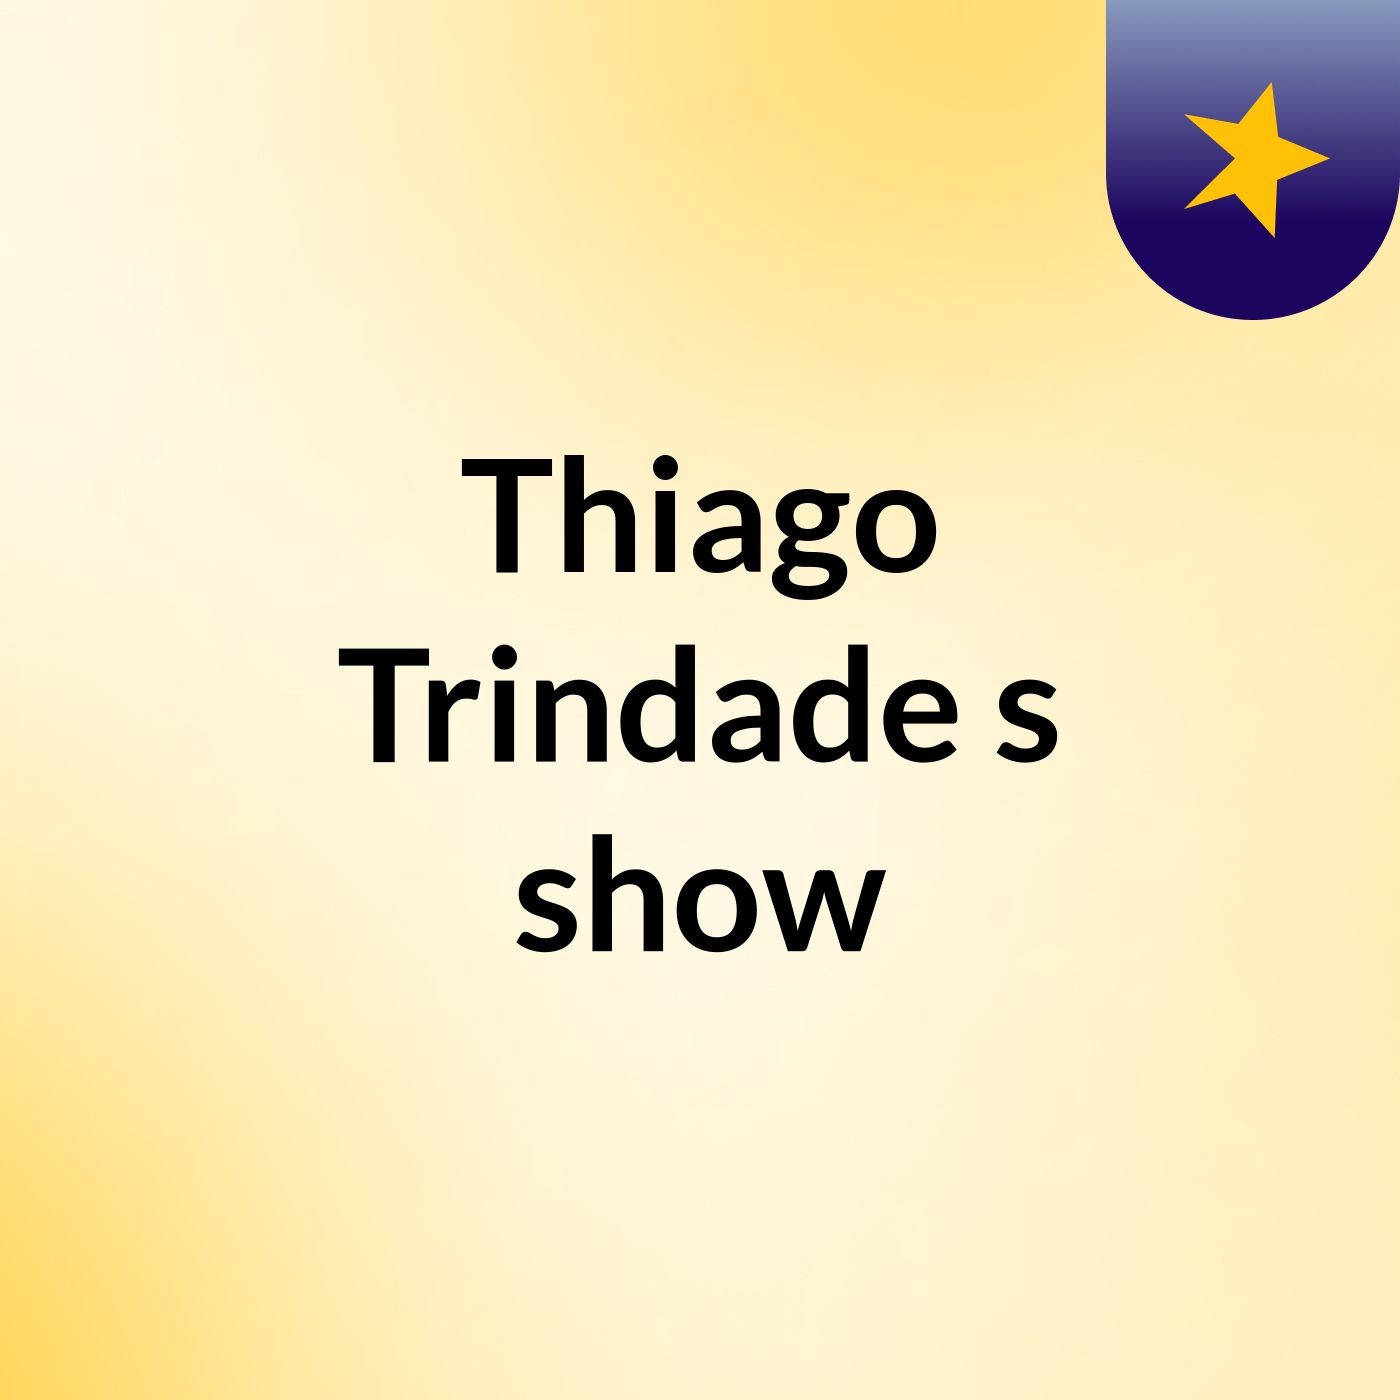 Thiago Trindade's show